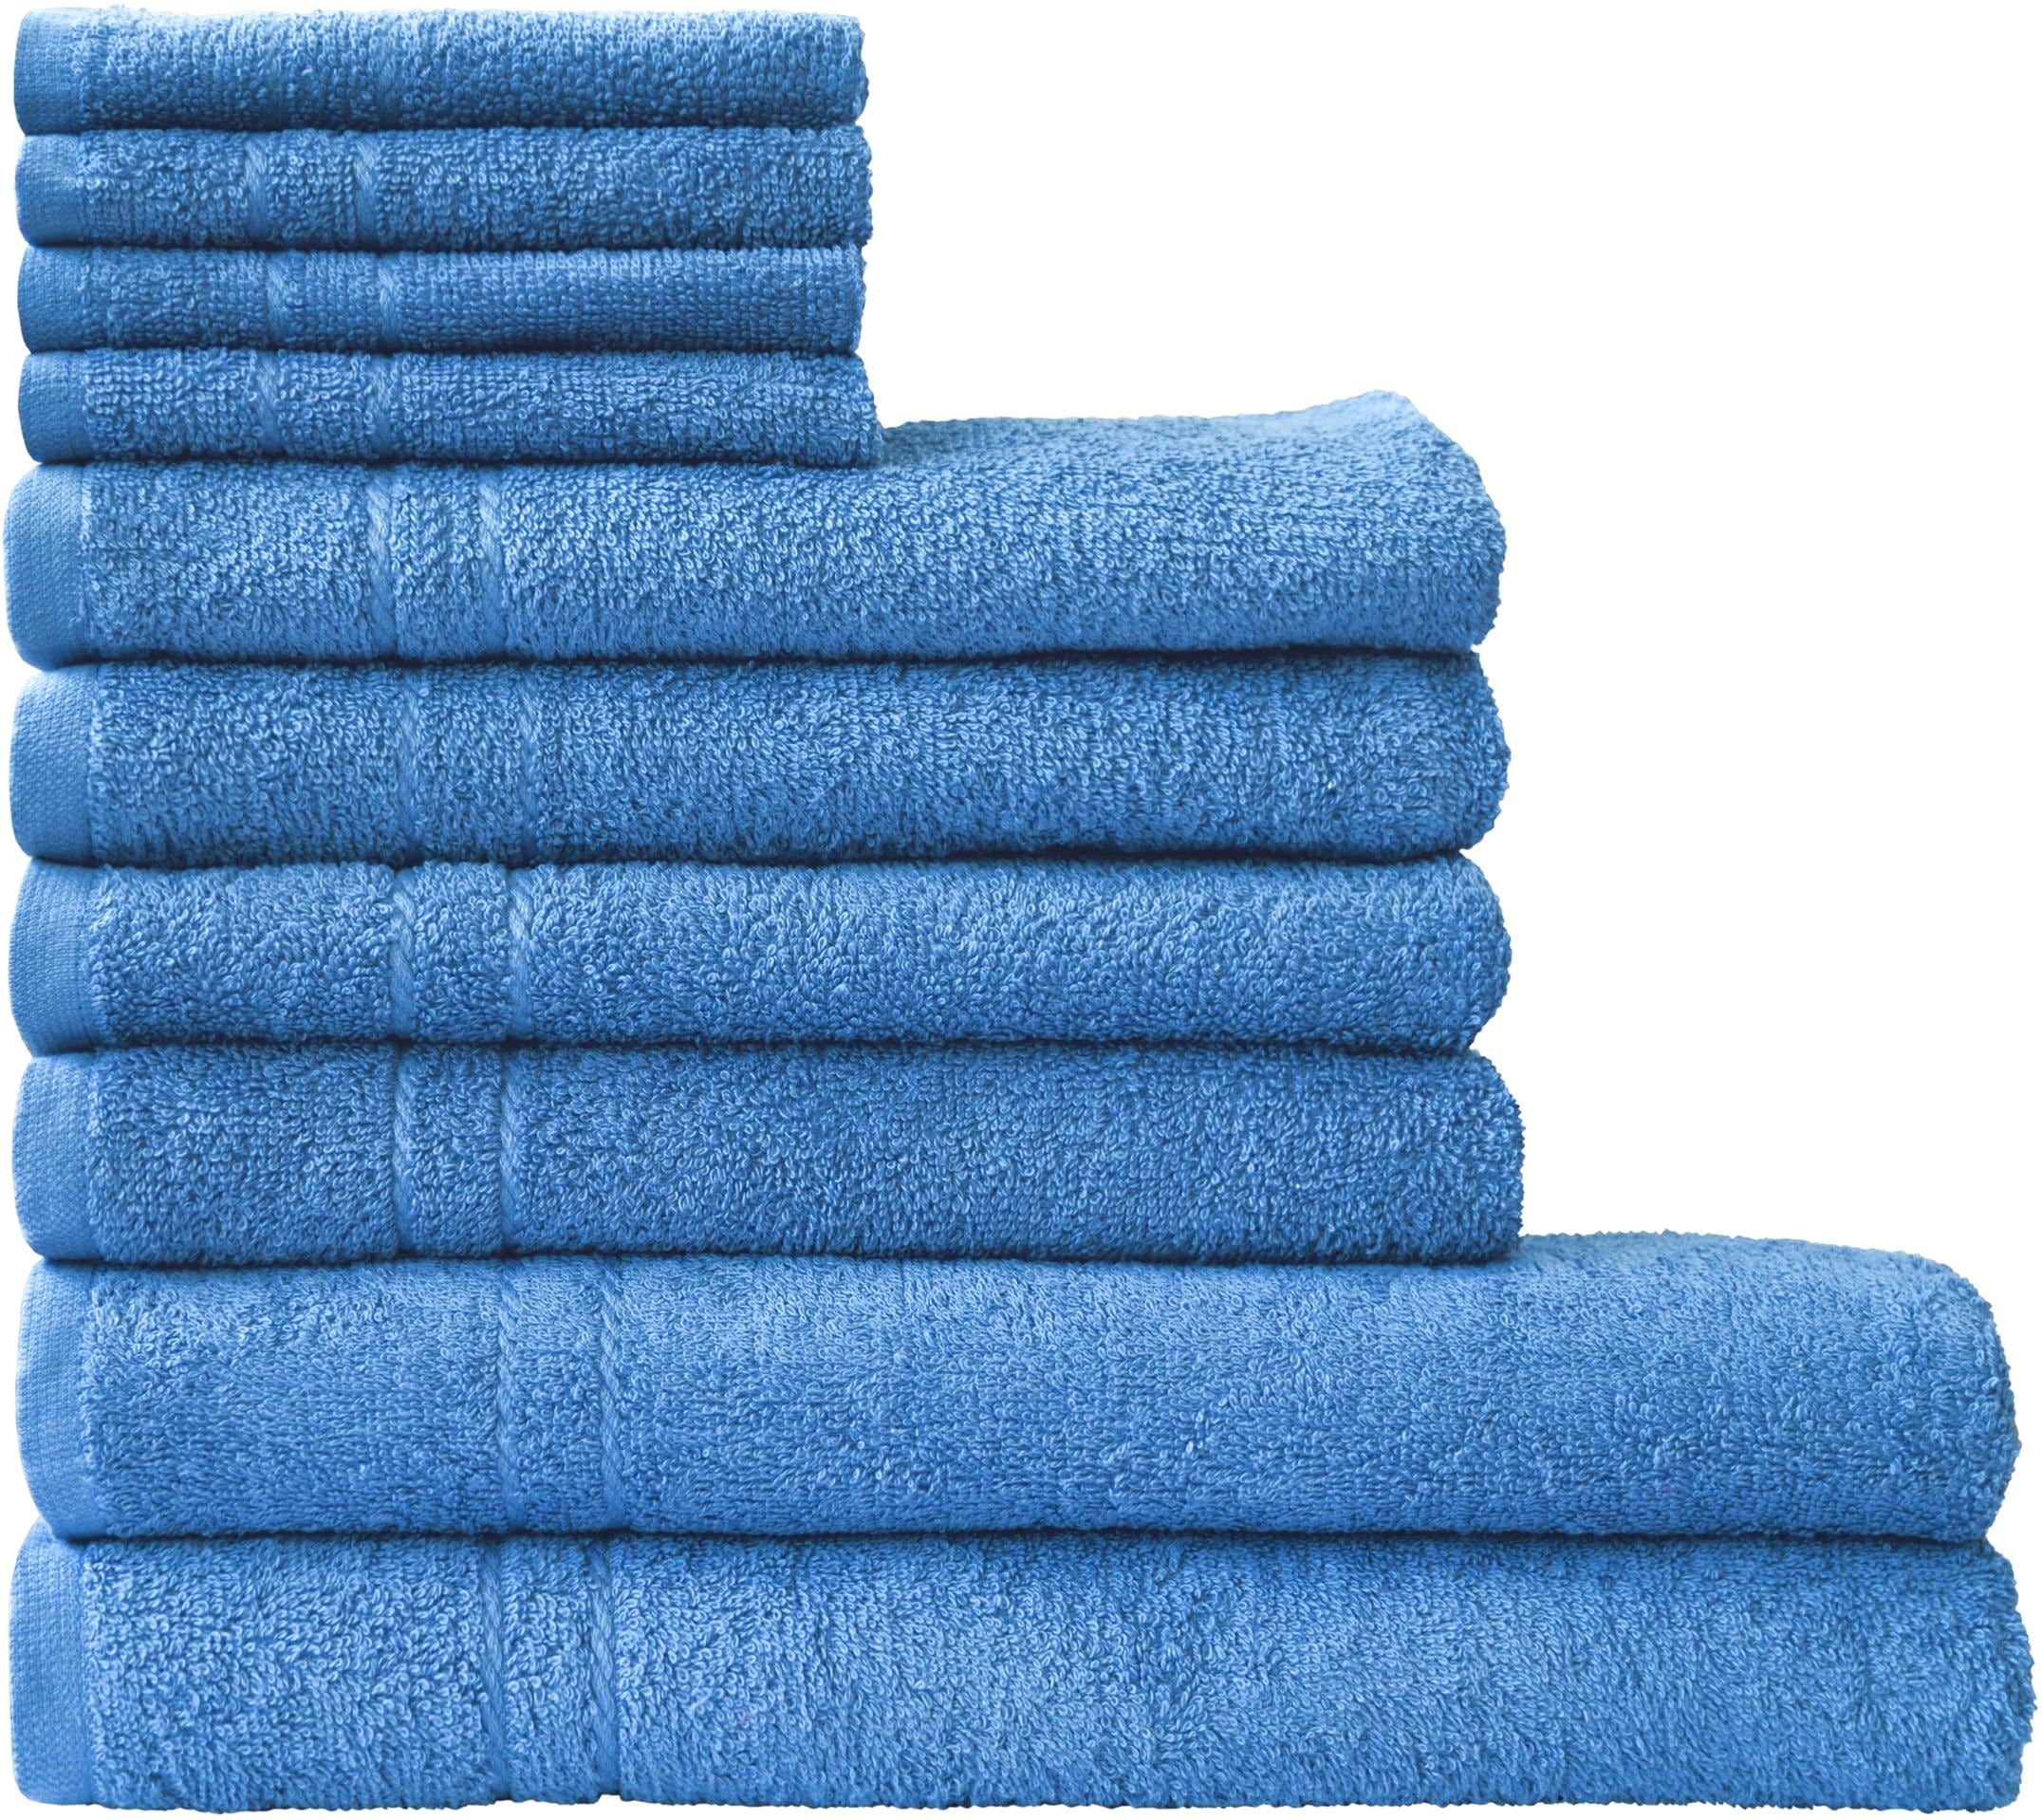 Handtuch-Sets liefern – Wir kaufen bei online Quelle